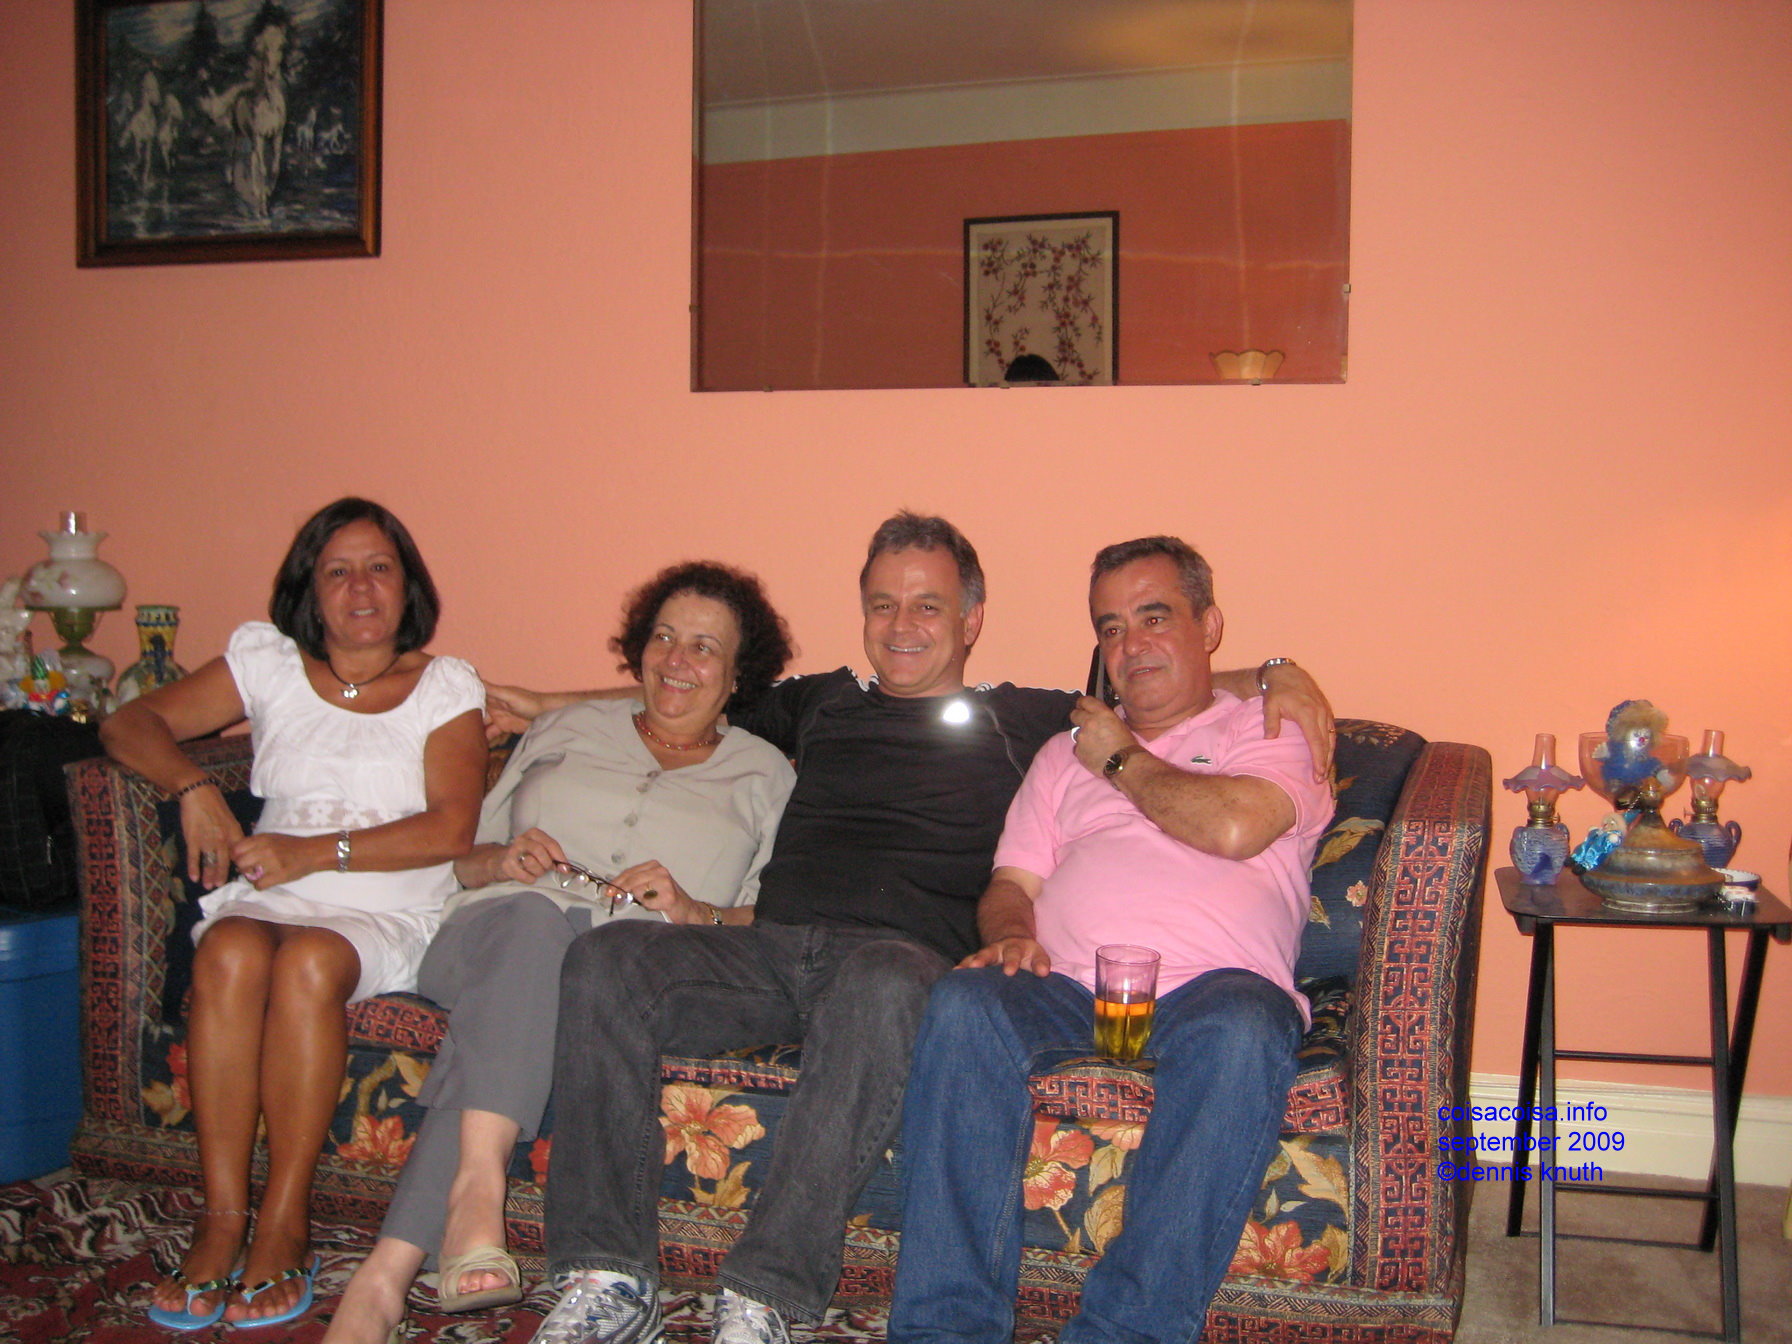 On the Sofa: Heloisa, Tarcisio, Janine and Helton